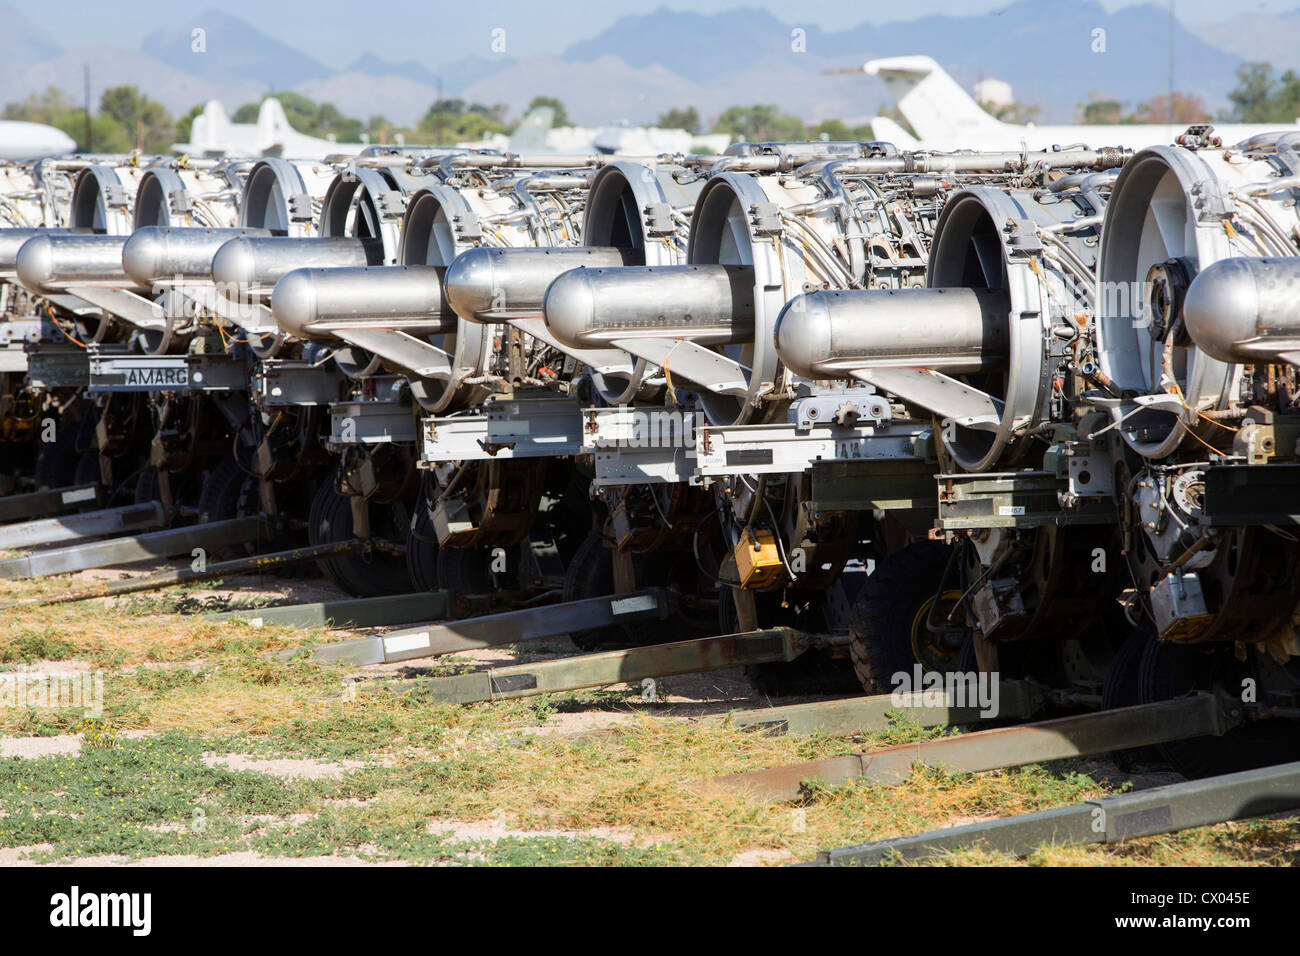 Motores de almacenamiento de los excedentes en la 309ª mantenimiento aeroespacial y Regeneración Group en Davis-Monthan Air Force Base. Foto de stock